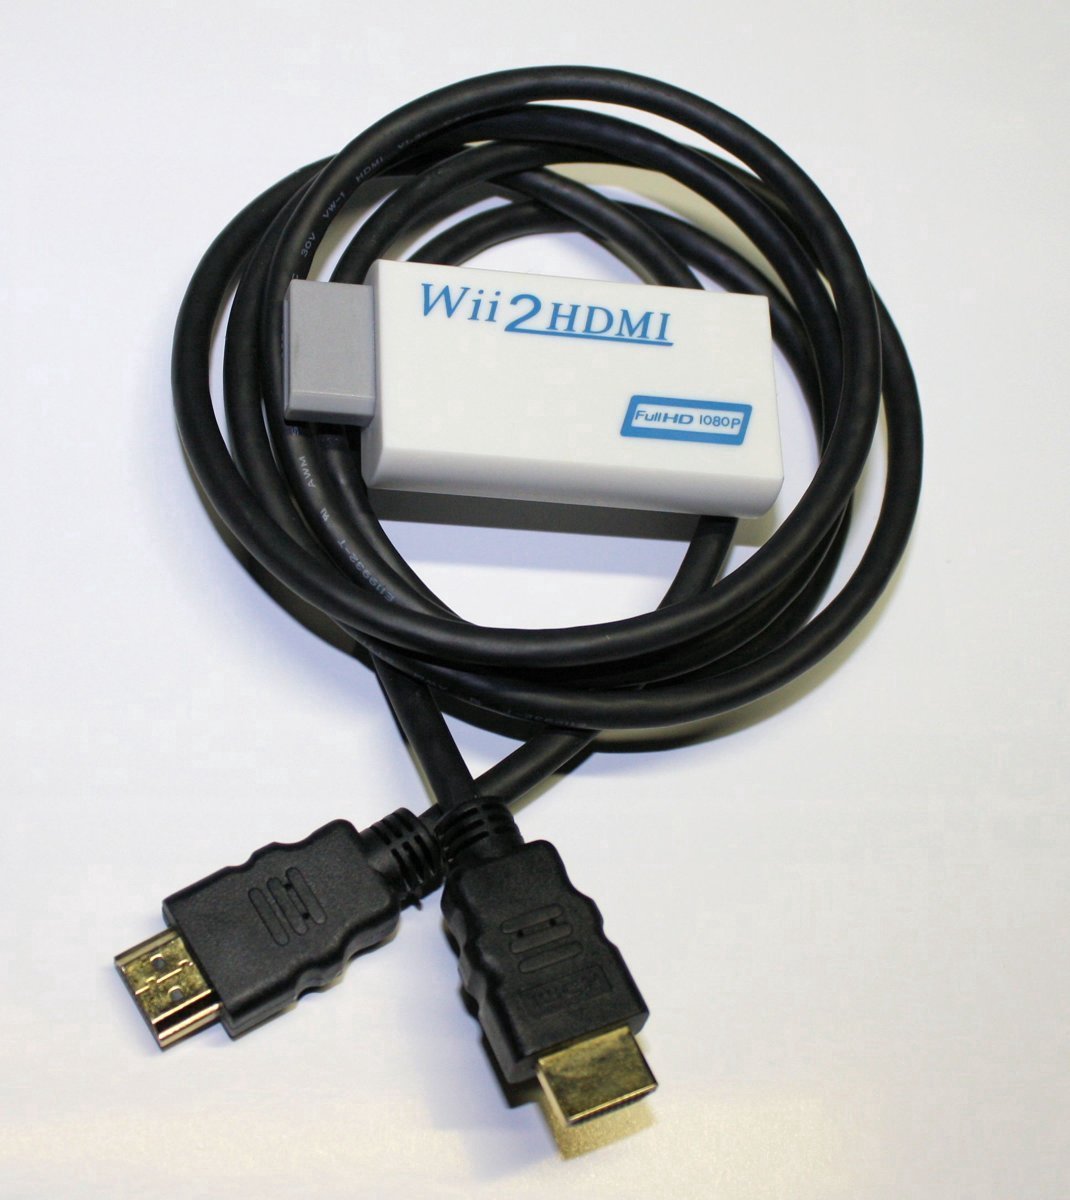 Terugroepen volleybal Hobart HDMI omvormer geschikt voor Nintendo Wii naar HDMI met HDMI kabel | bol